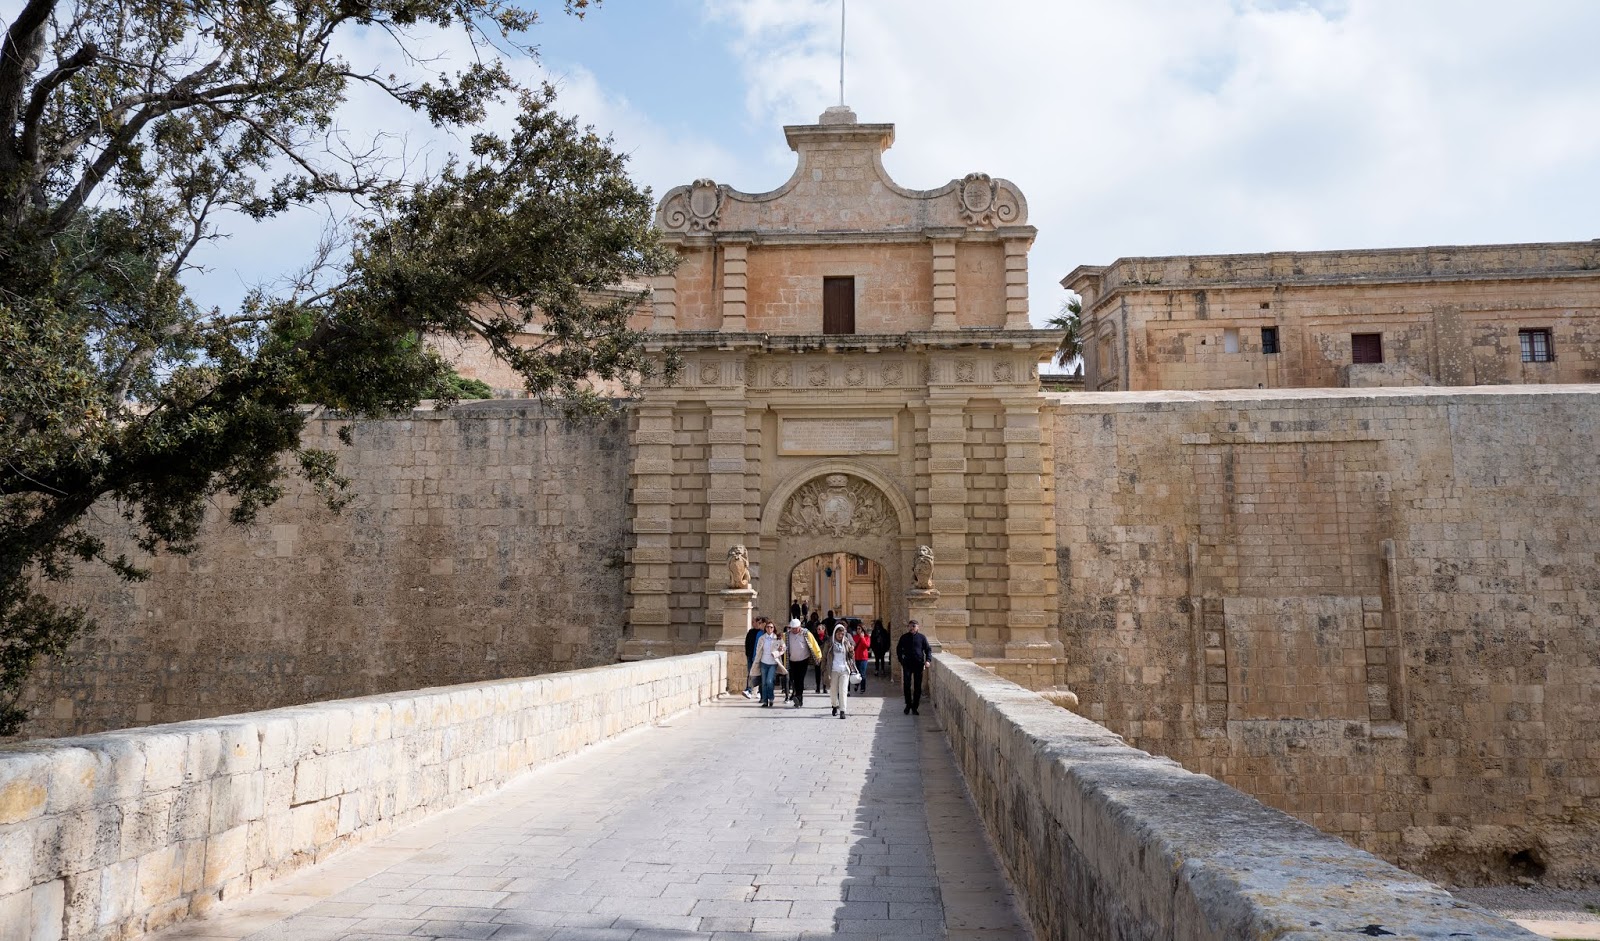 Mdina: Malta's walled city